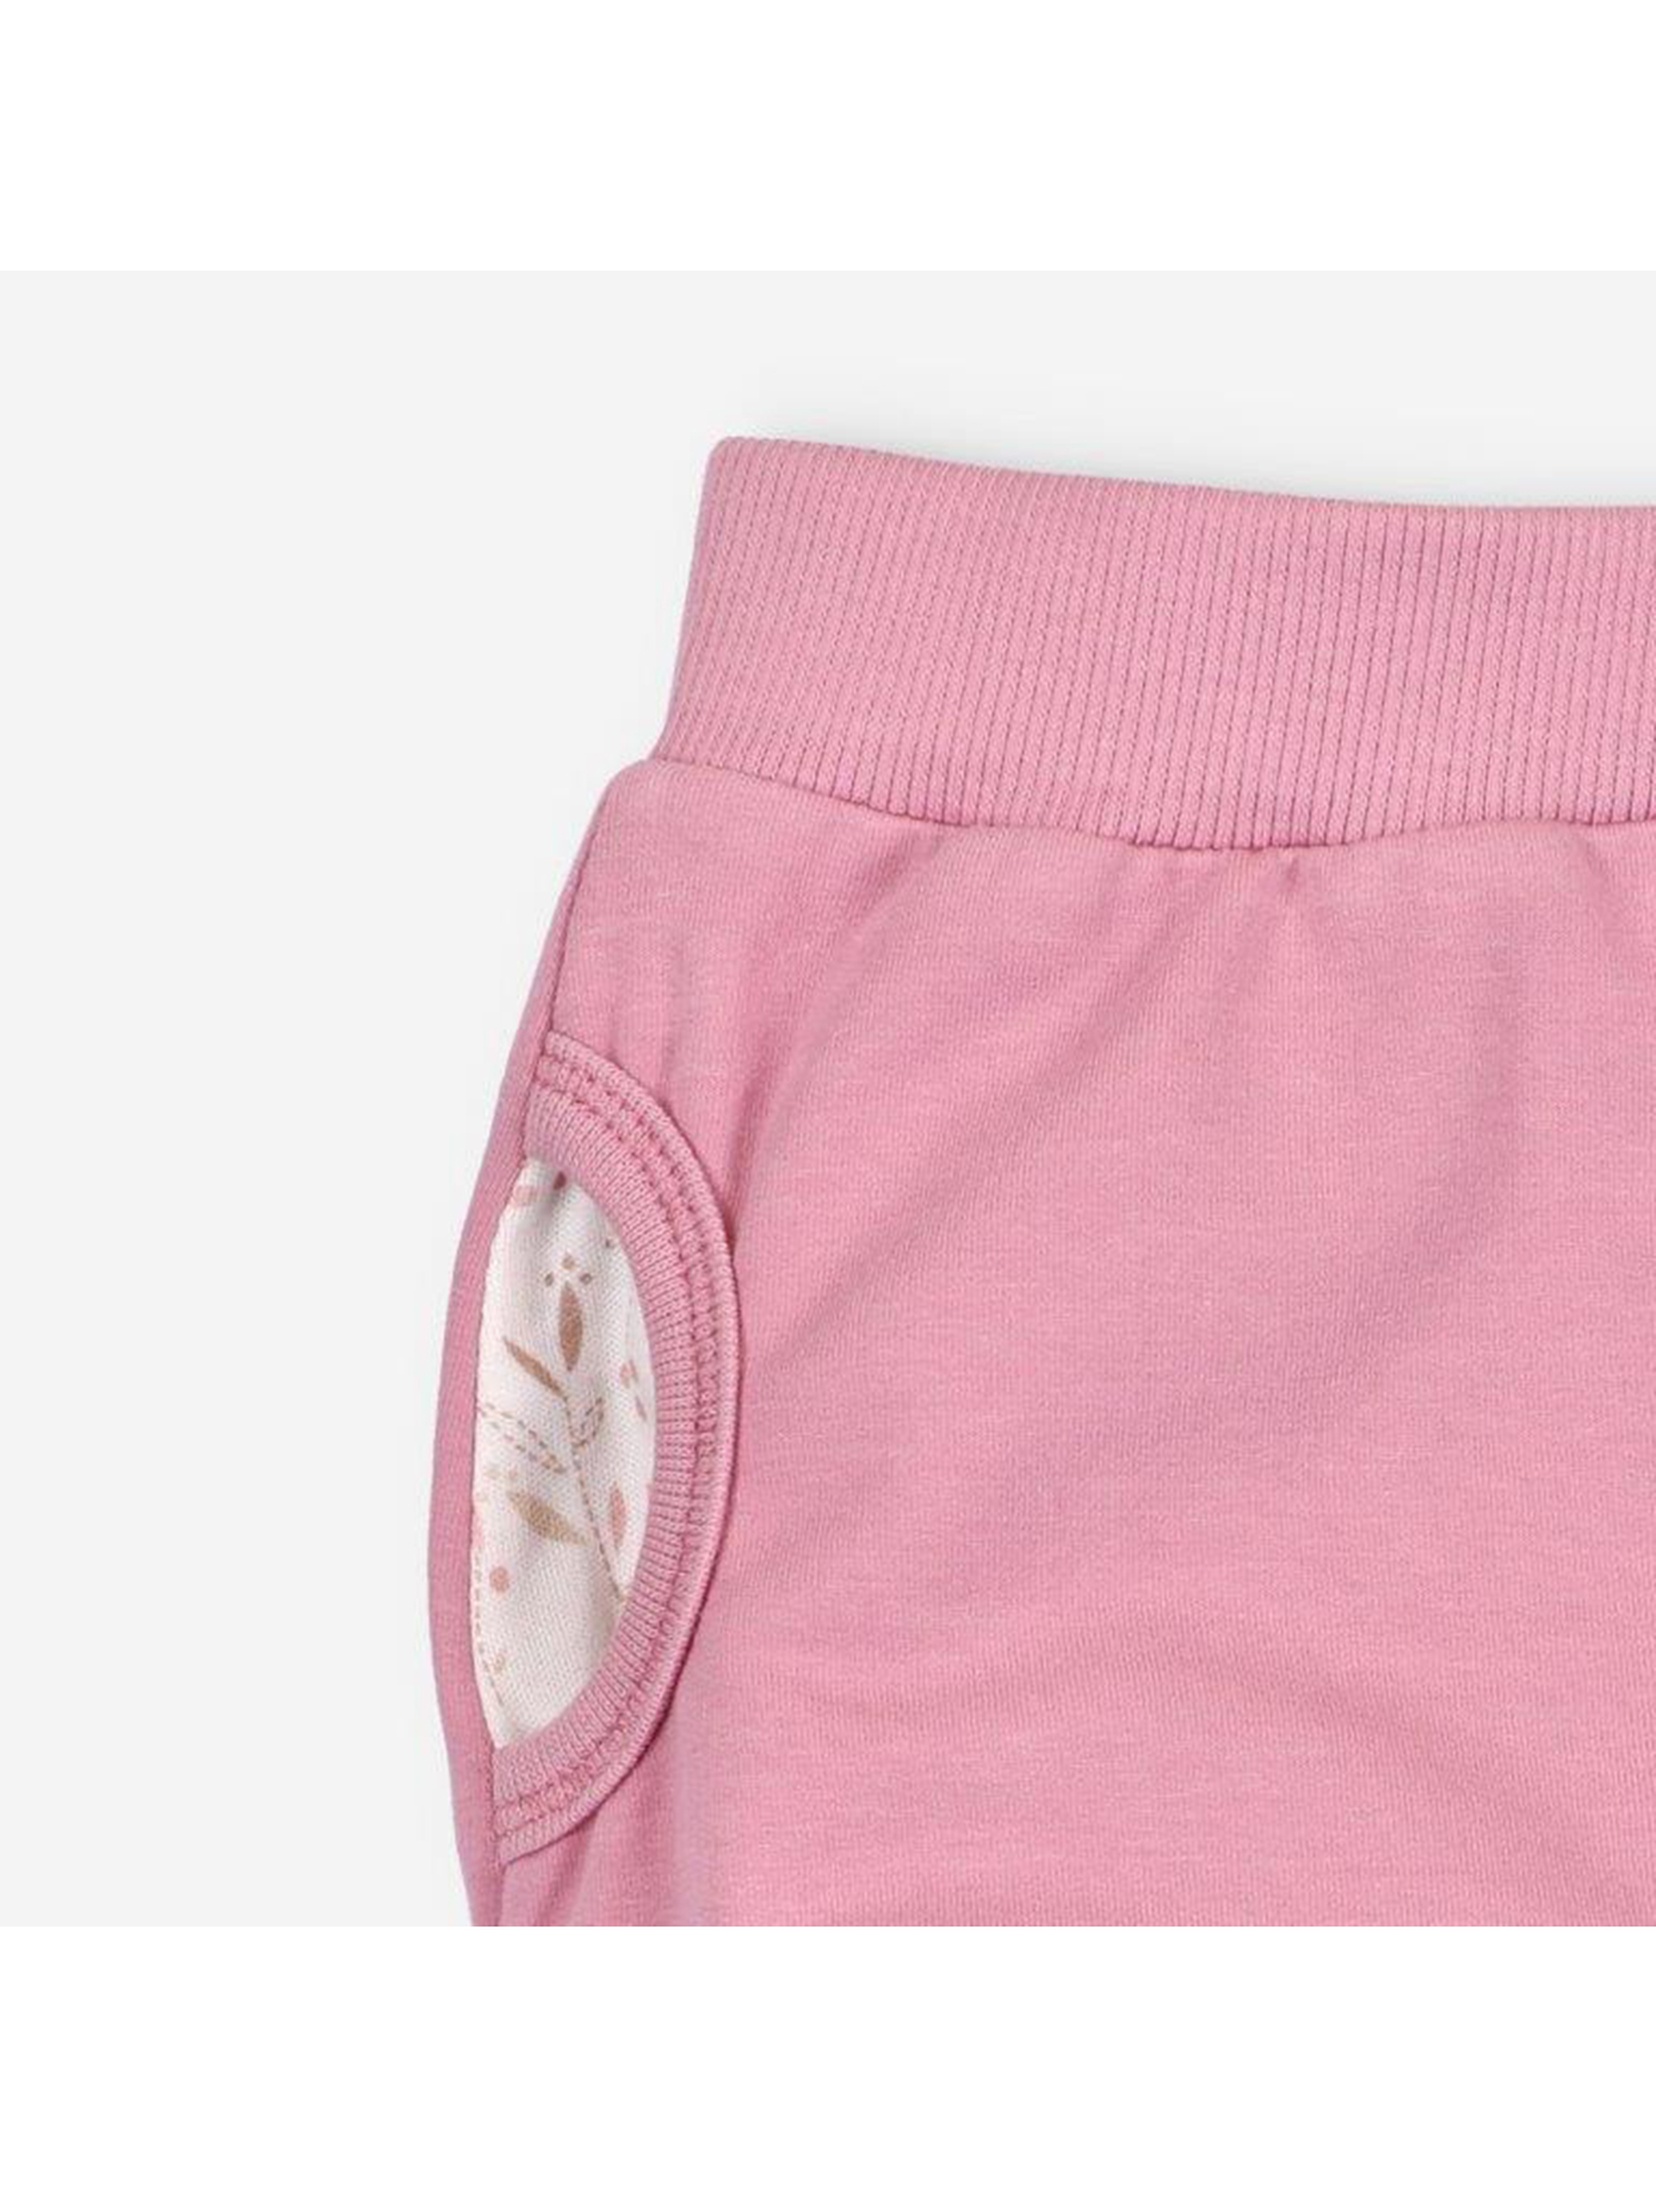 Spodnie niemowlęce z bawełny organicznej dla dziewczynki różowe